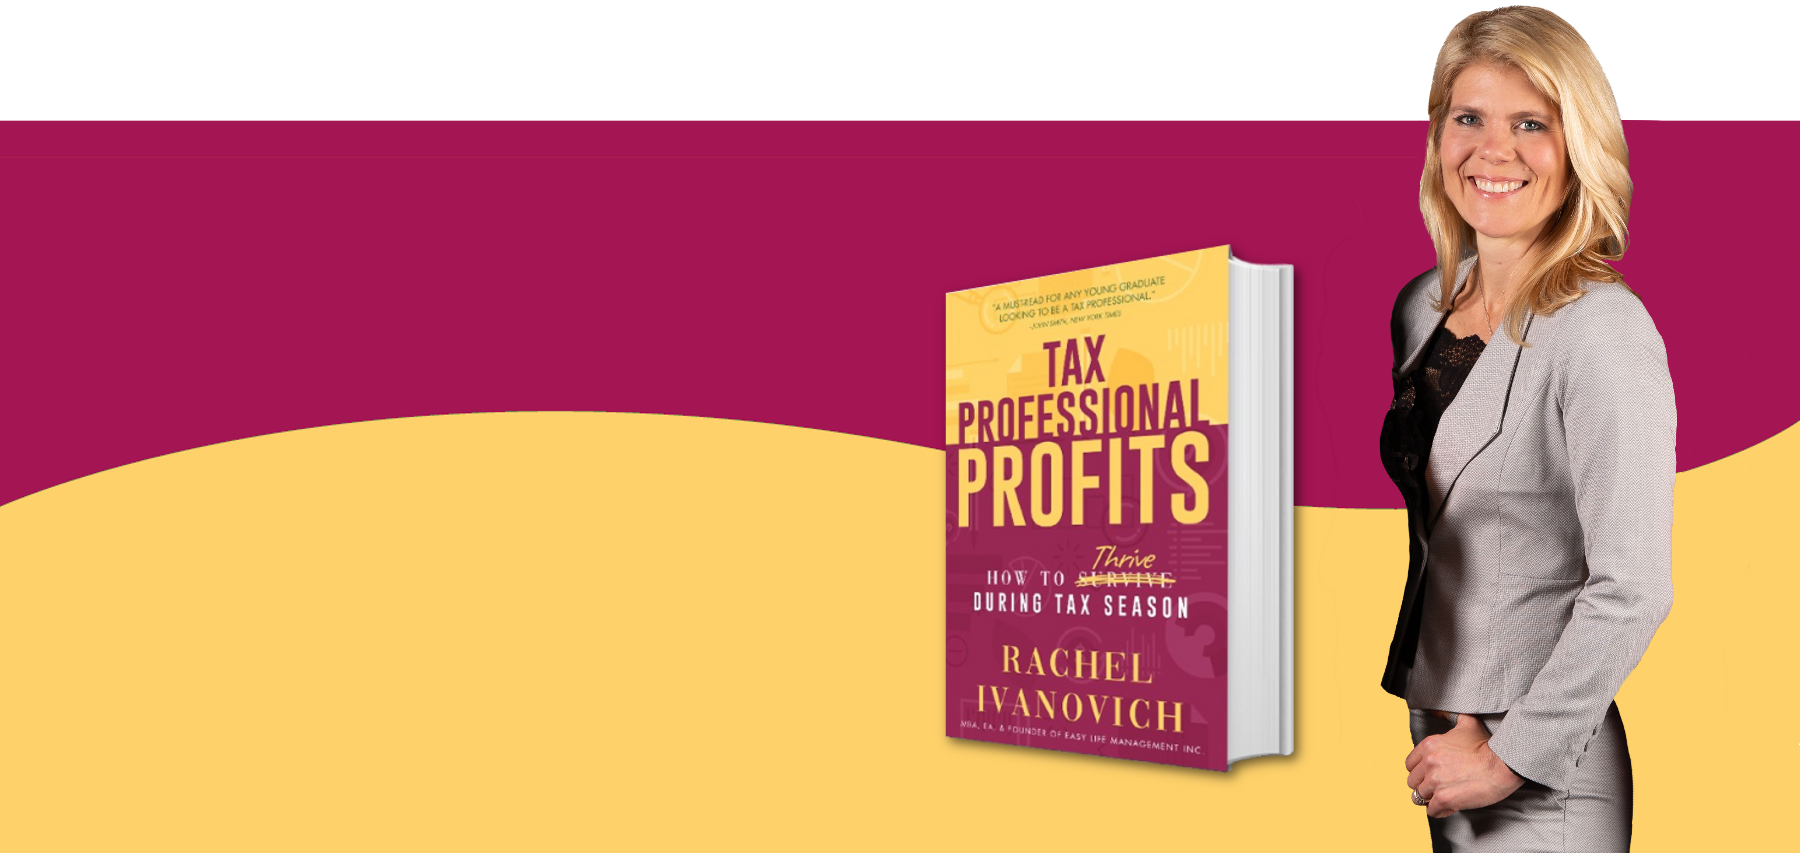 Tax Professional Profits